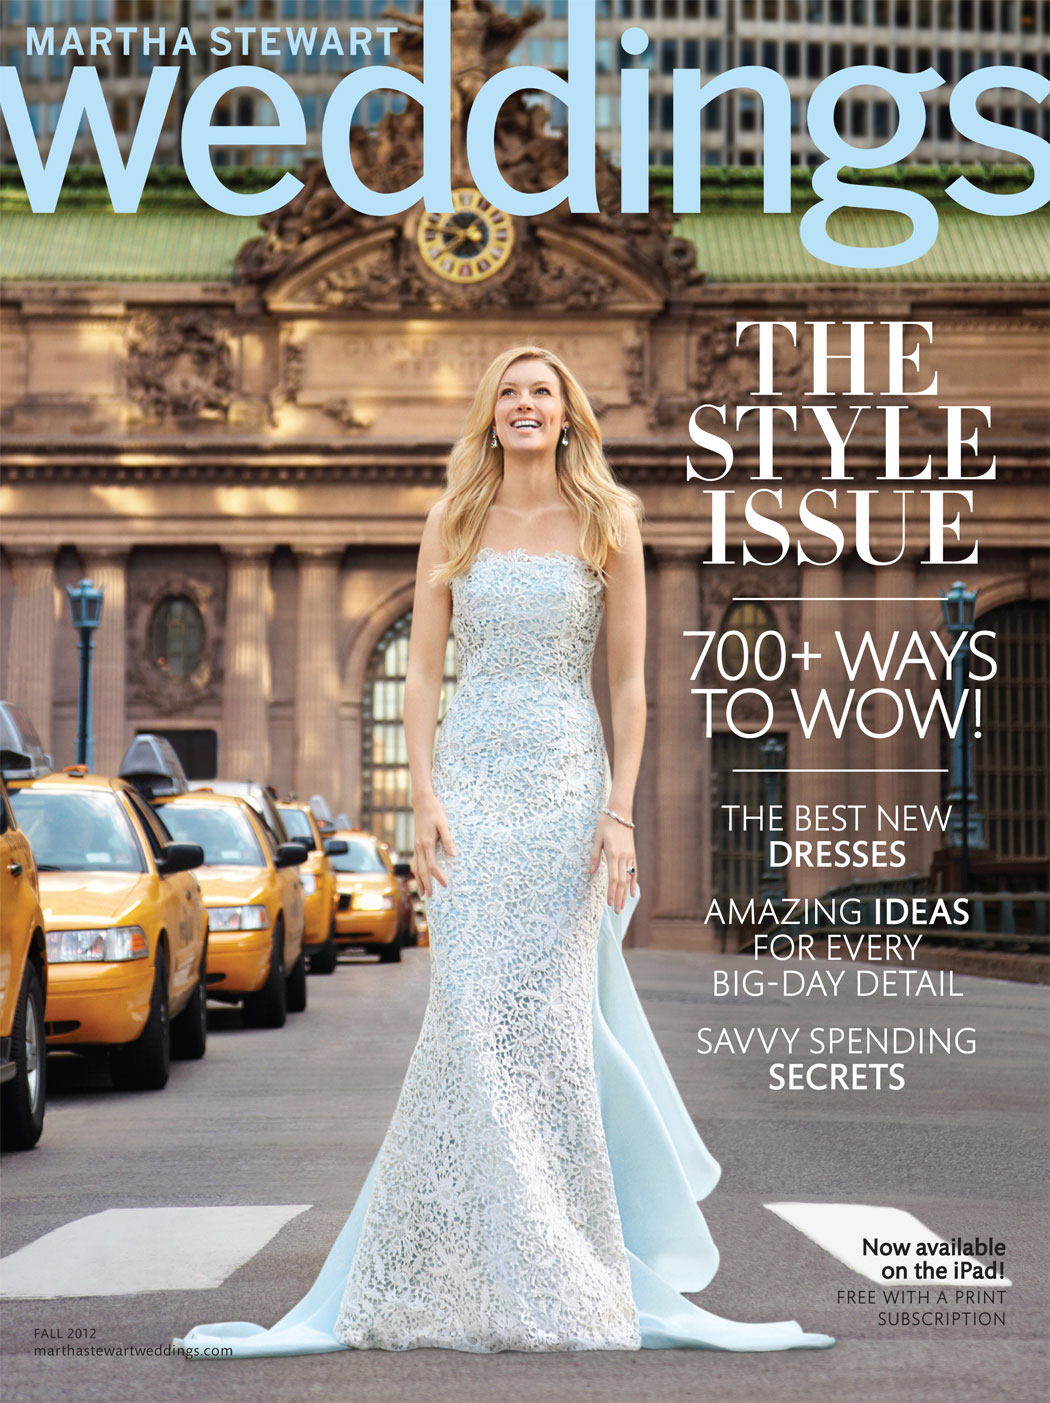 Sneak Peek – Martha Stewart Weddings Fall 2012 Issue!